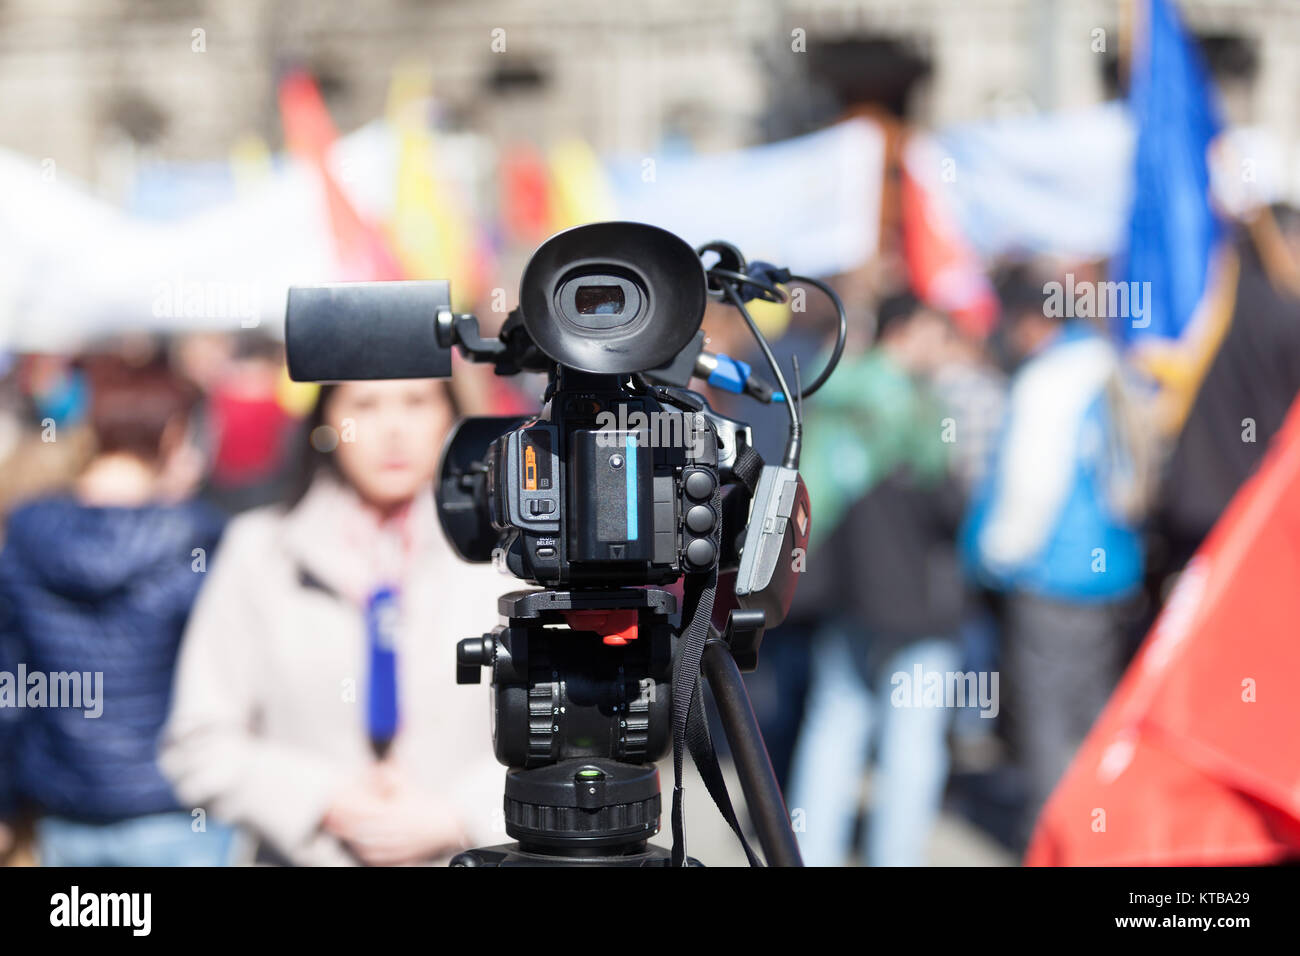 Le tournage de protestation de rue à l'aide d'une caméra vidéo Banque D'Images